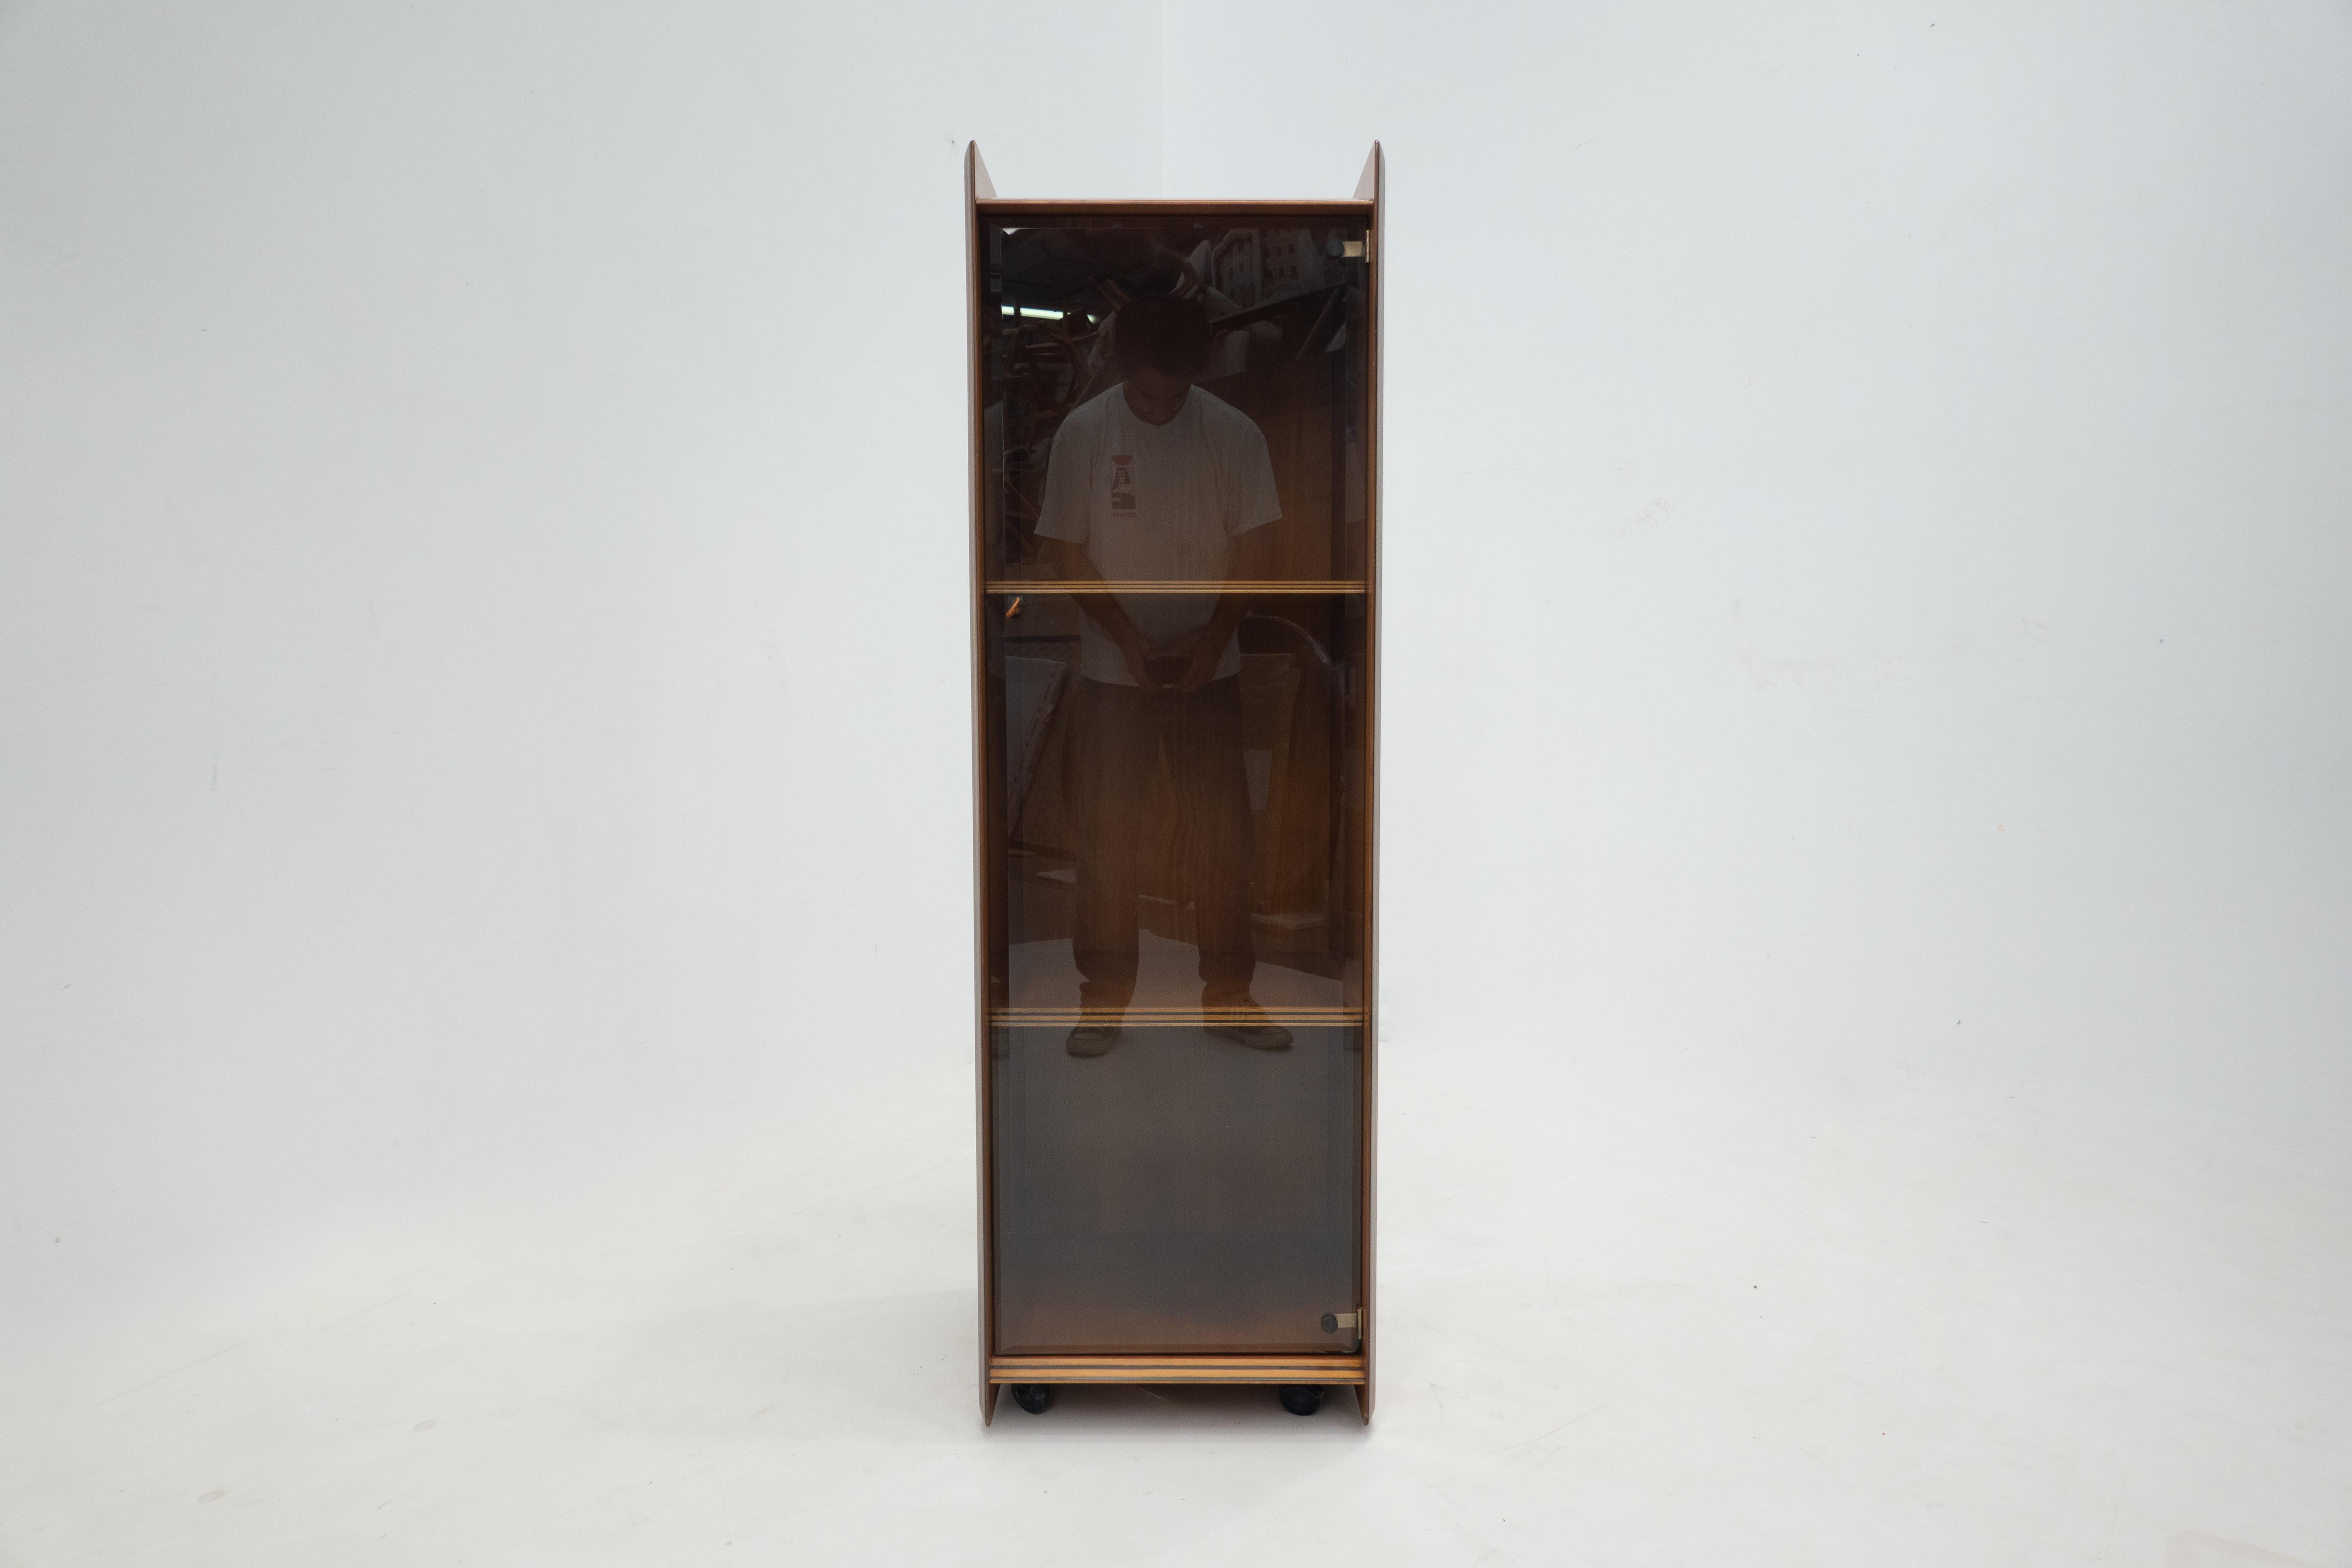 Italian Mid-Century Artona shelf by Afra & Tobia Scarpa for Maxalto, Wood and Leather